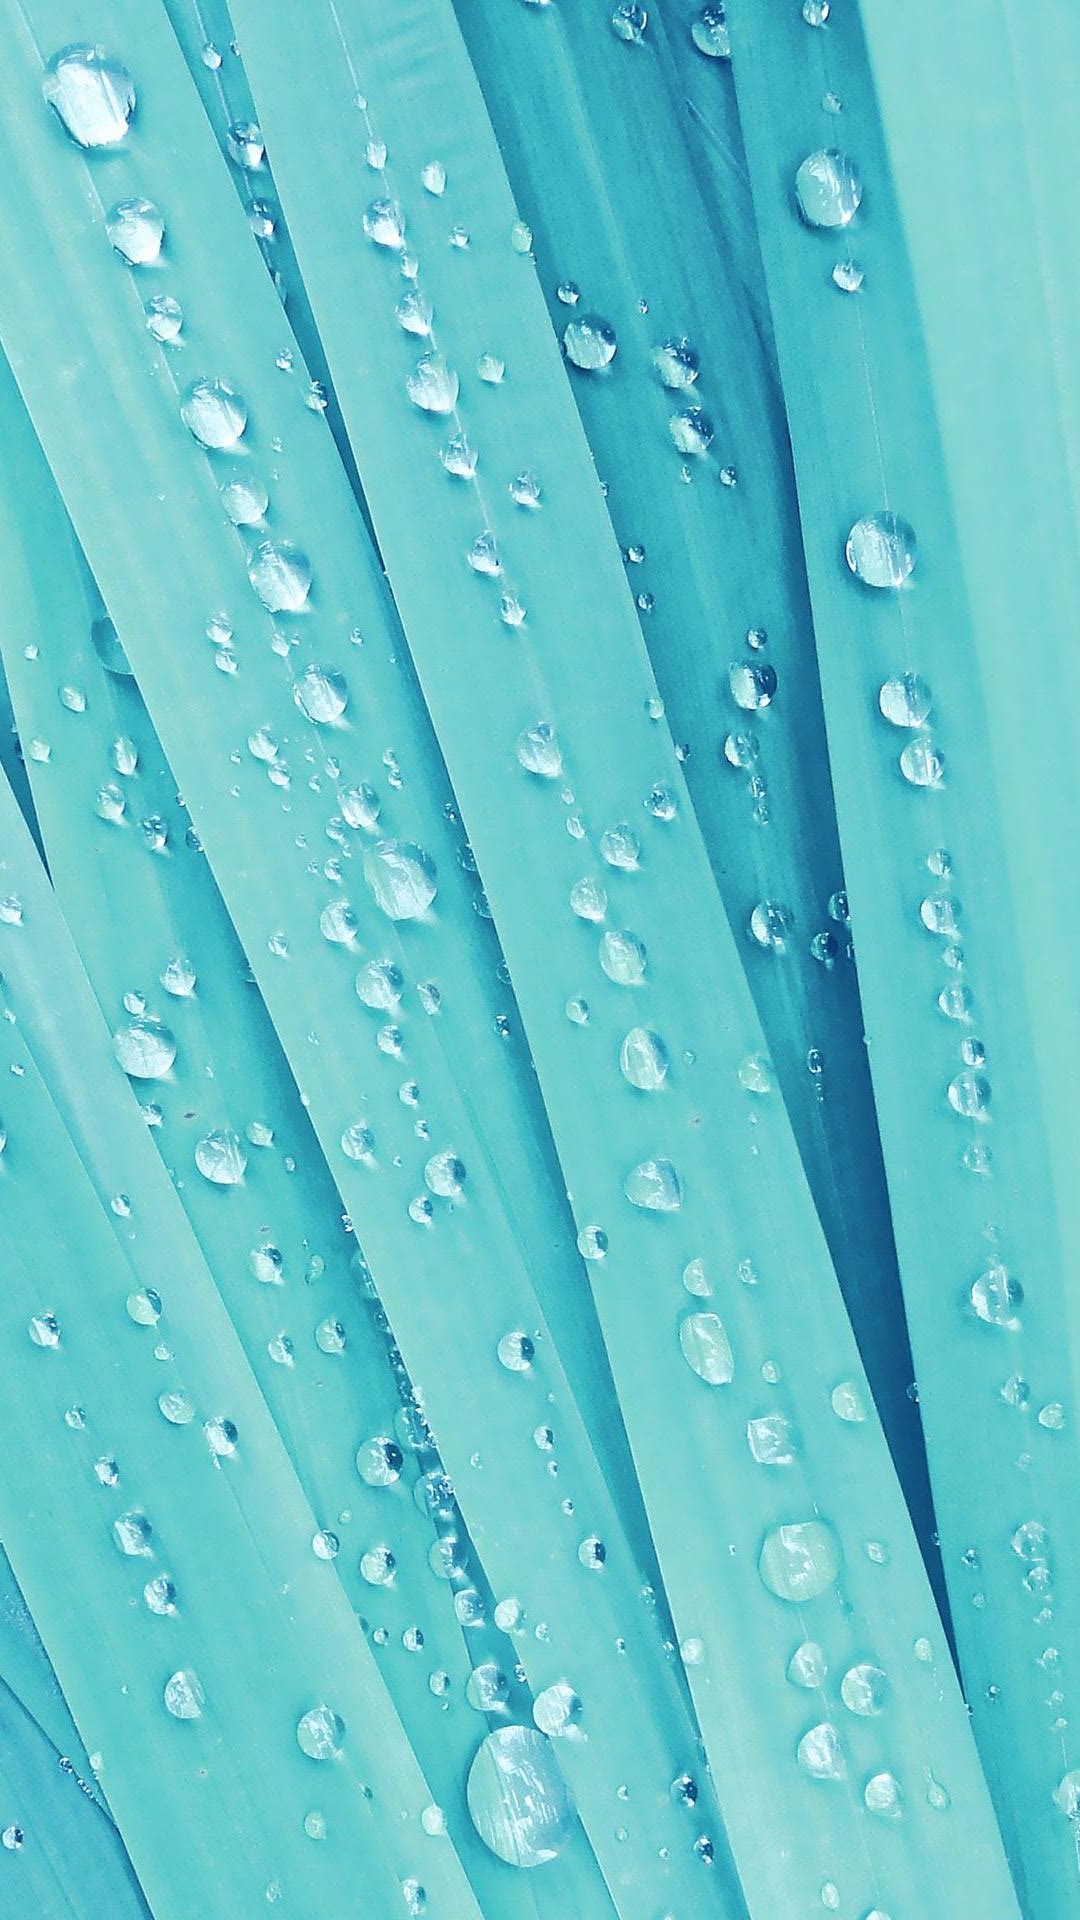 Water Drops Htc HD Wallpaper Best One